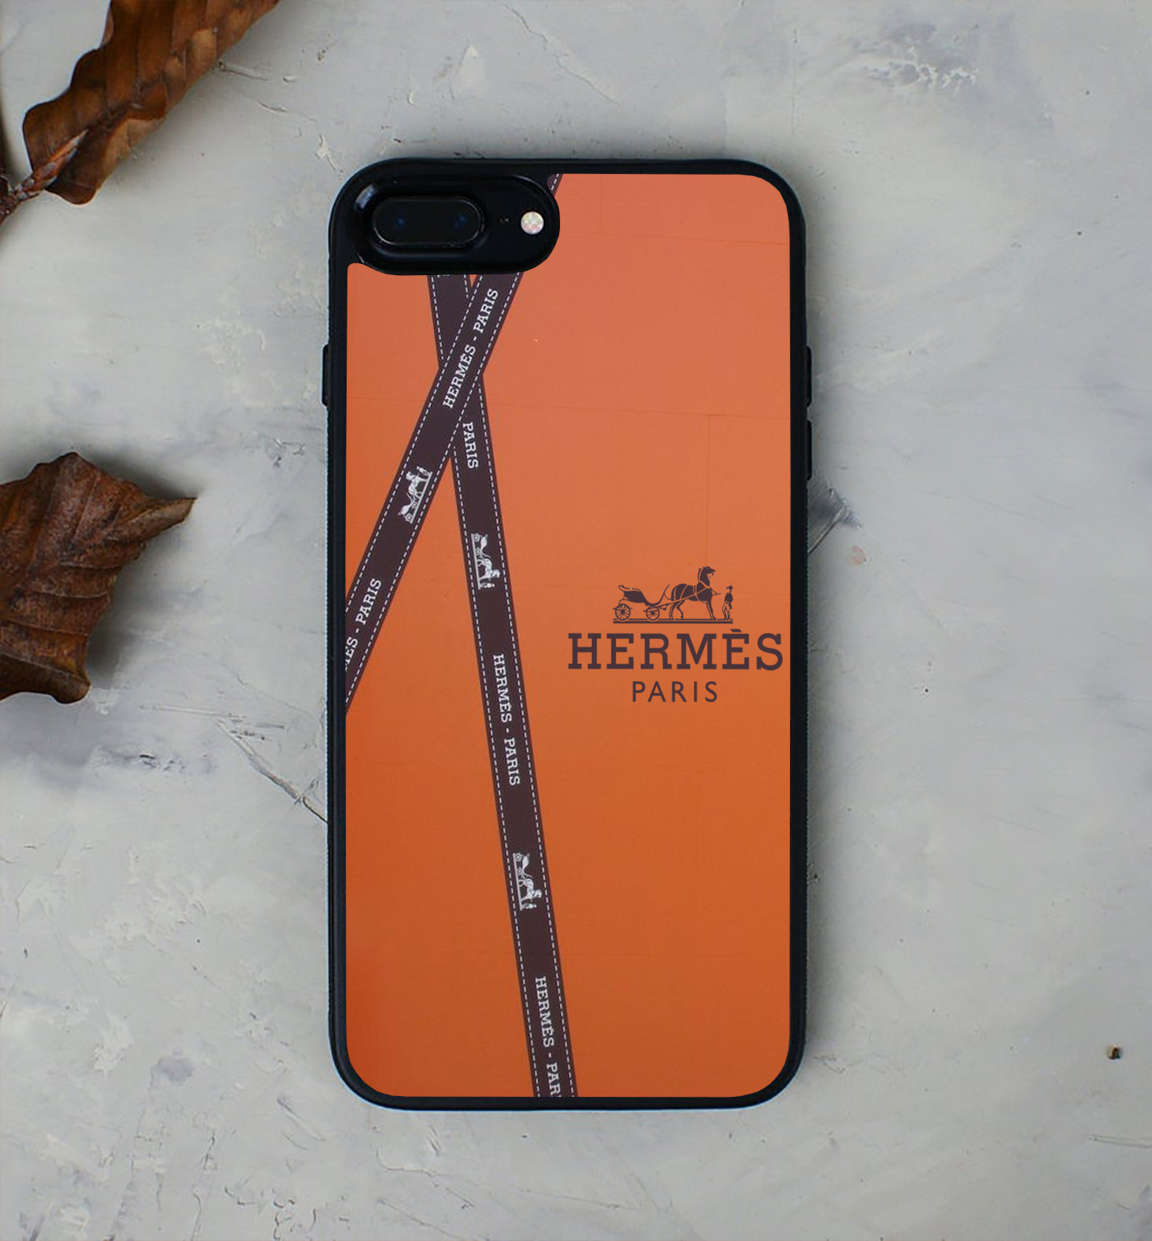 Hermes Paris iPhone 11 Pro Max Case - CASESHUNTER